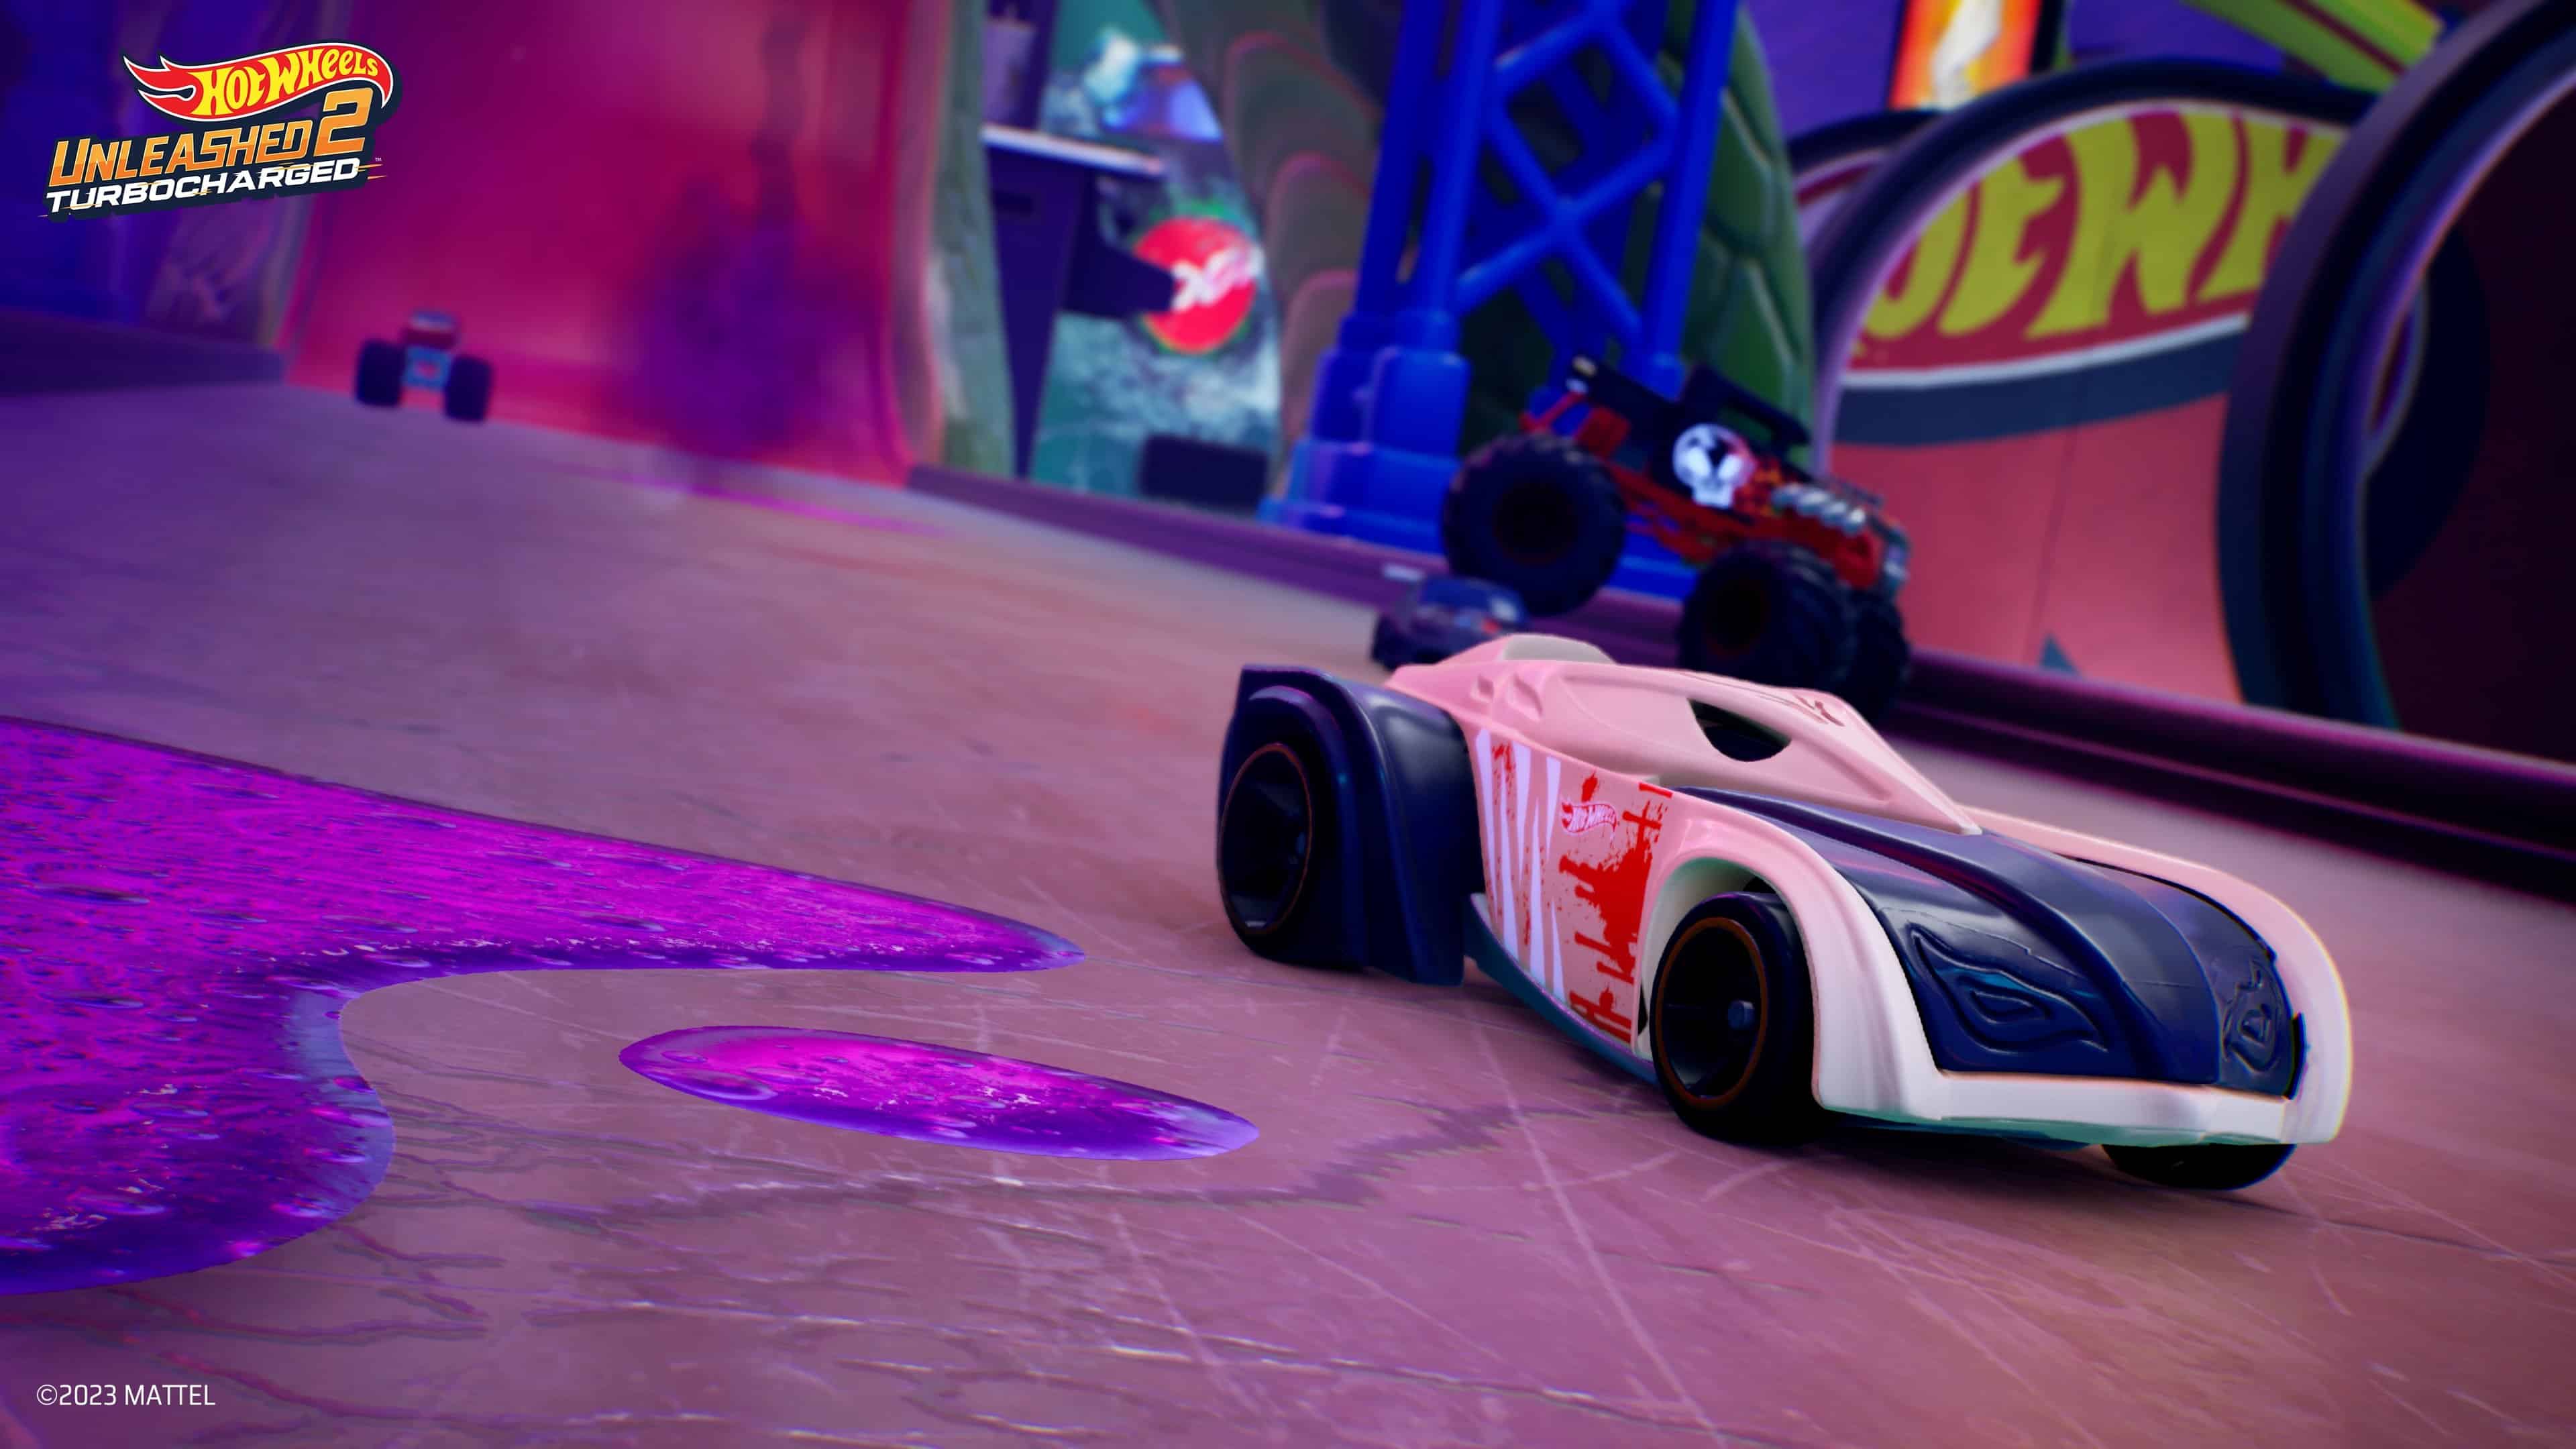 Hot Wheels fait son retour dans Forza dans la première extension